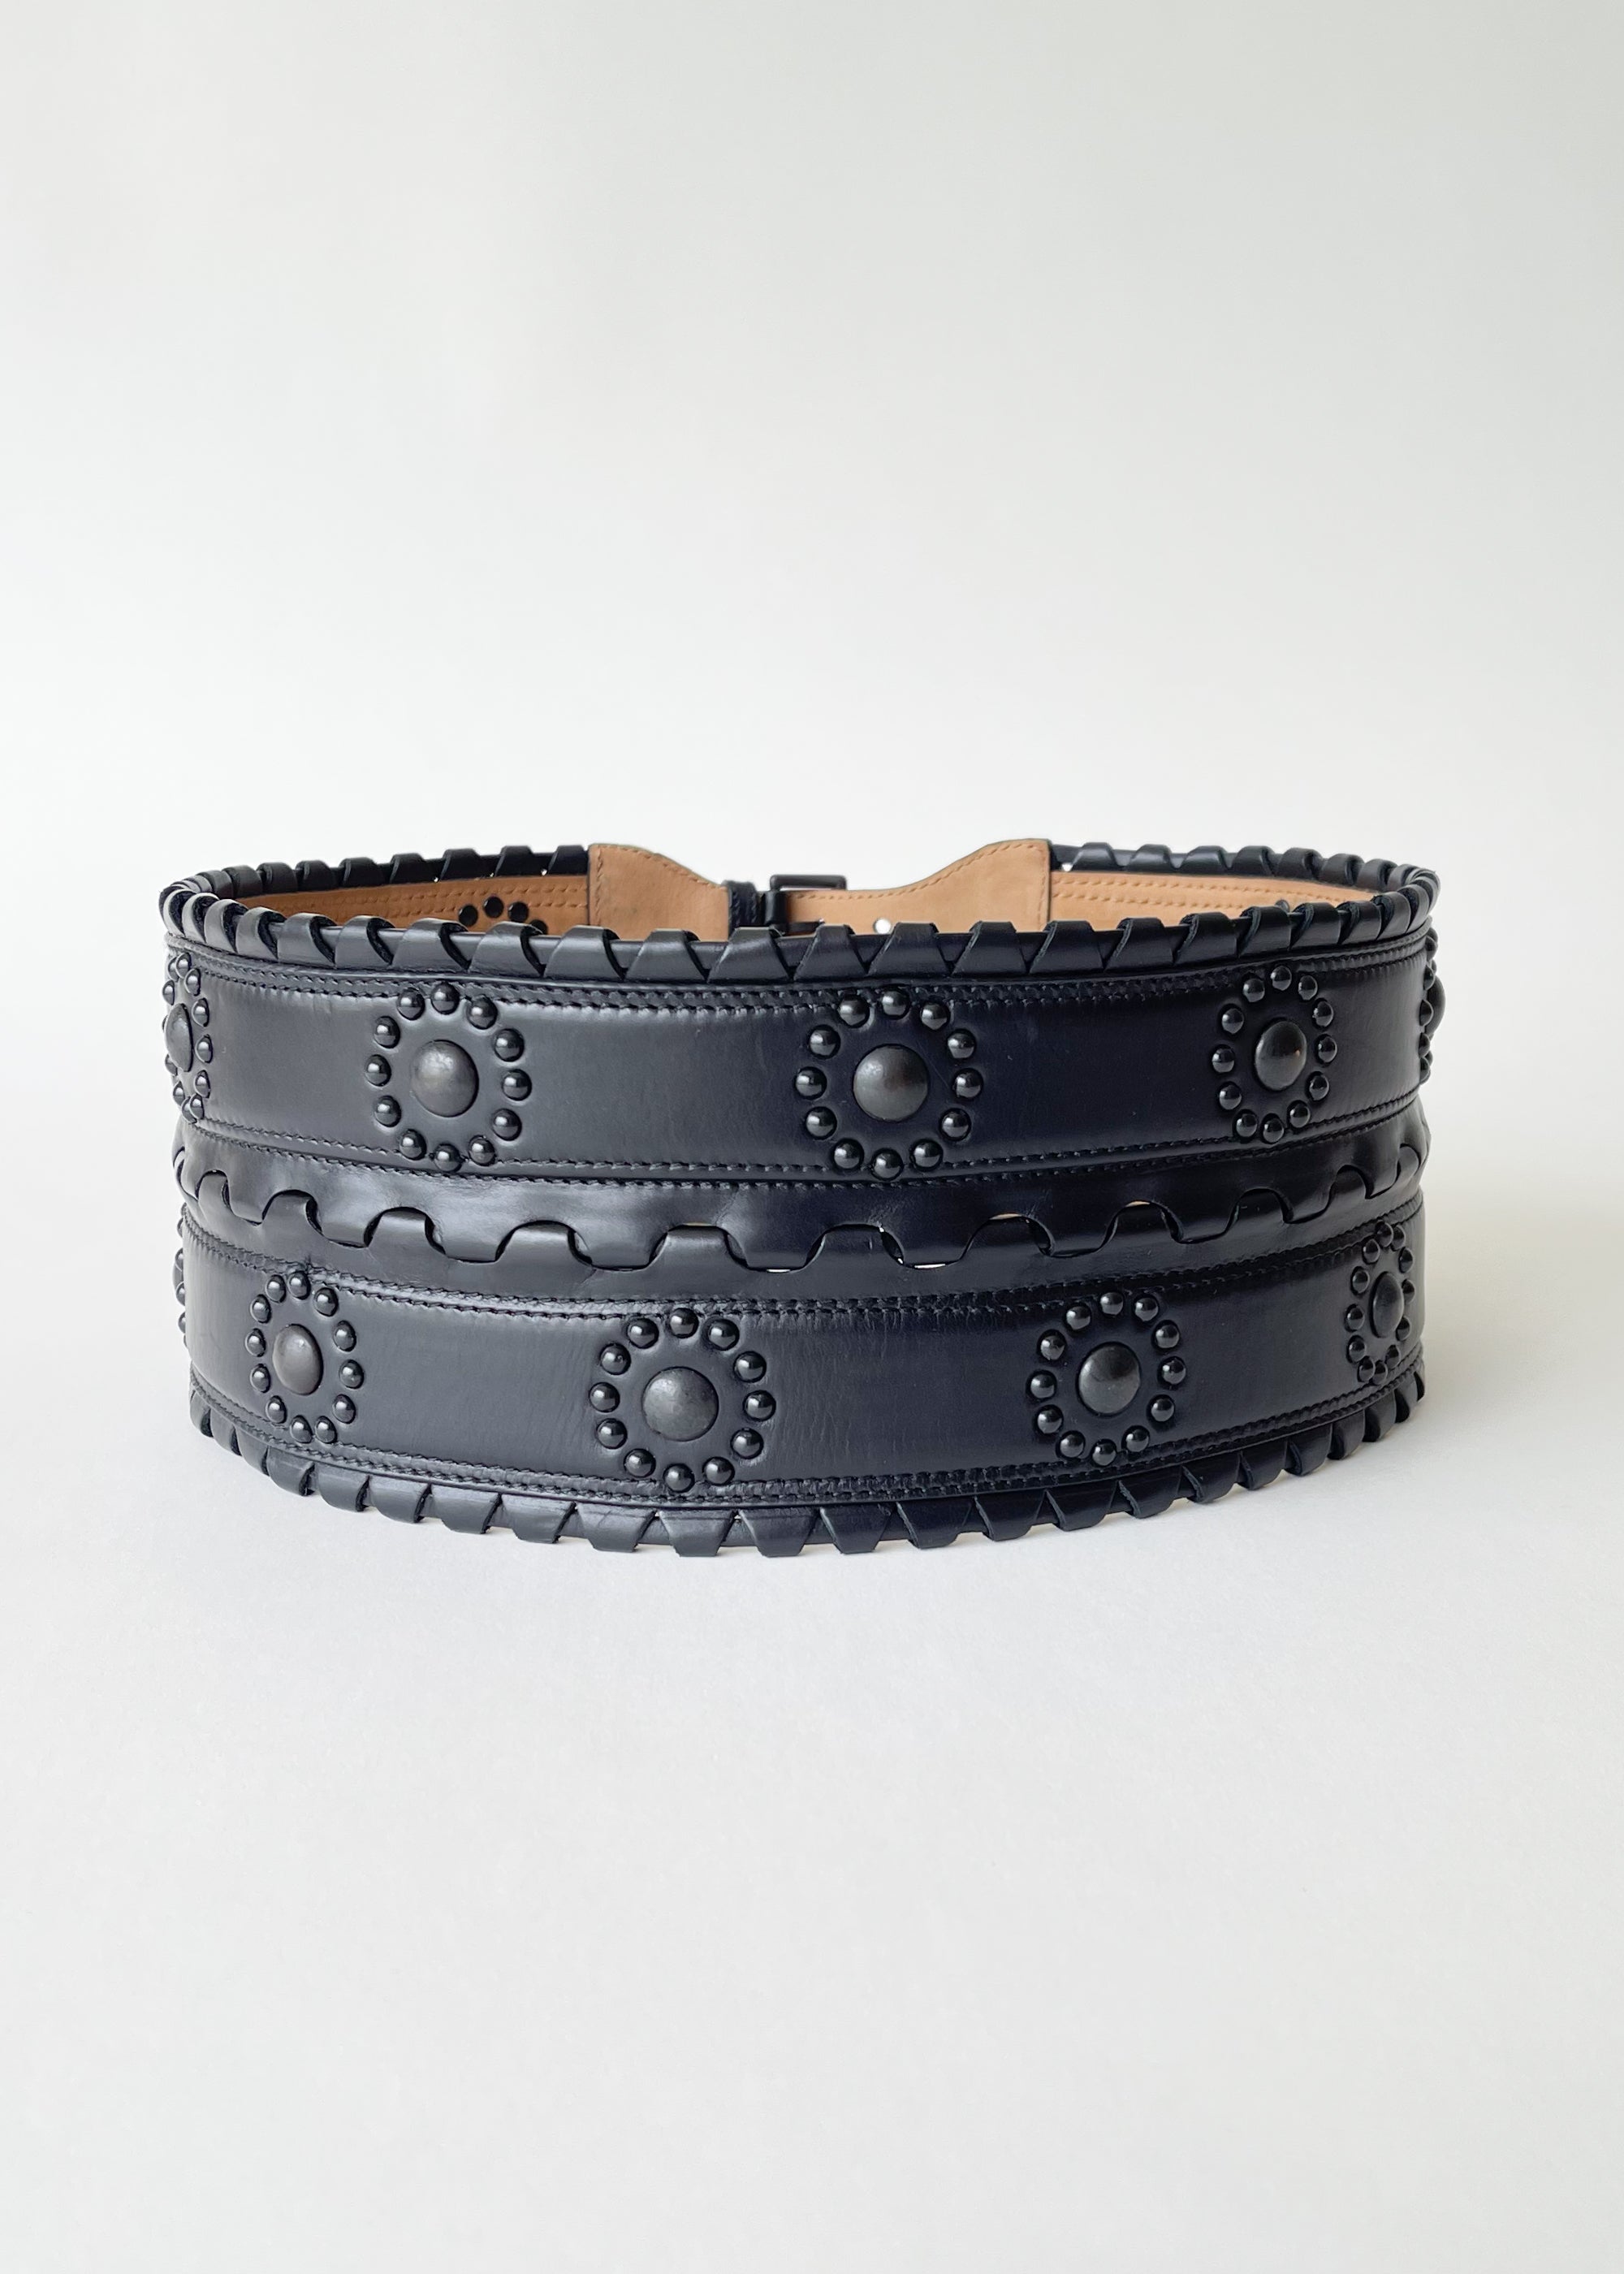 Metallic Brown Wide Handwoven Leather Corset Waist Belt